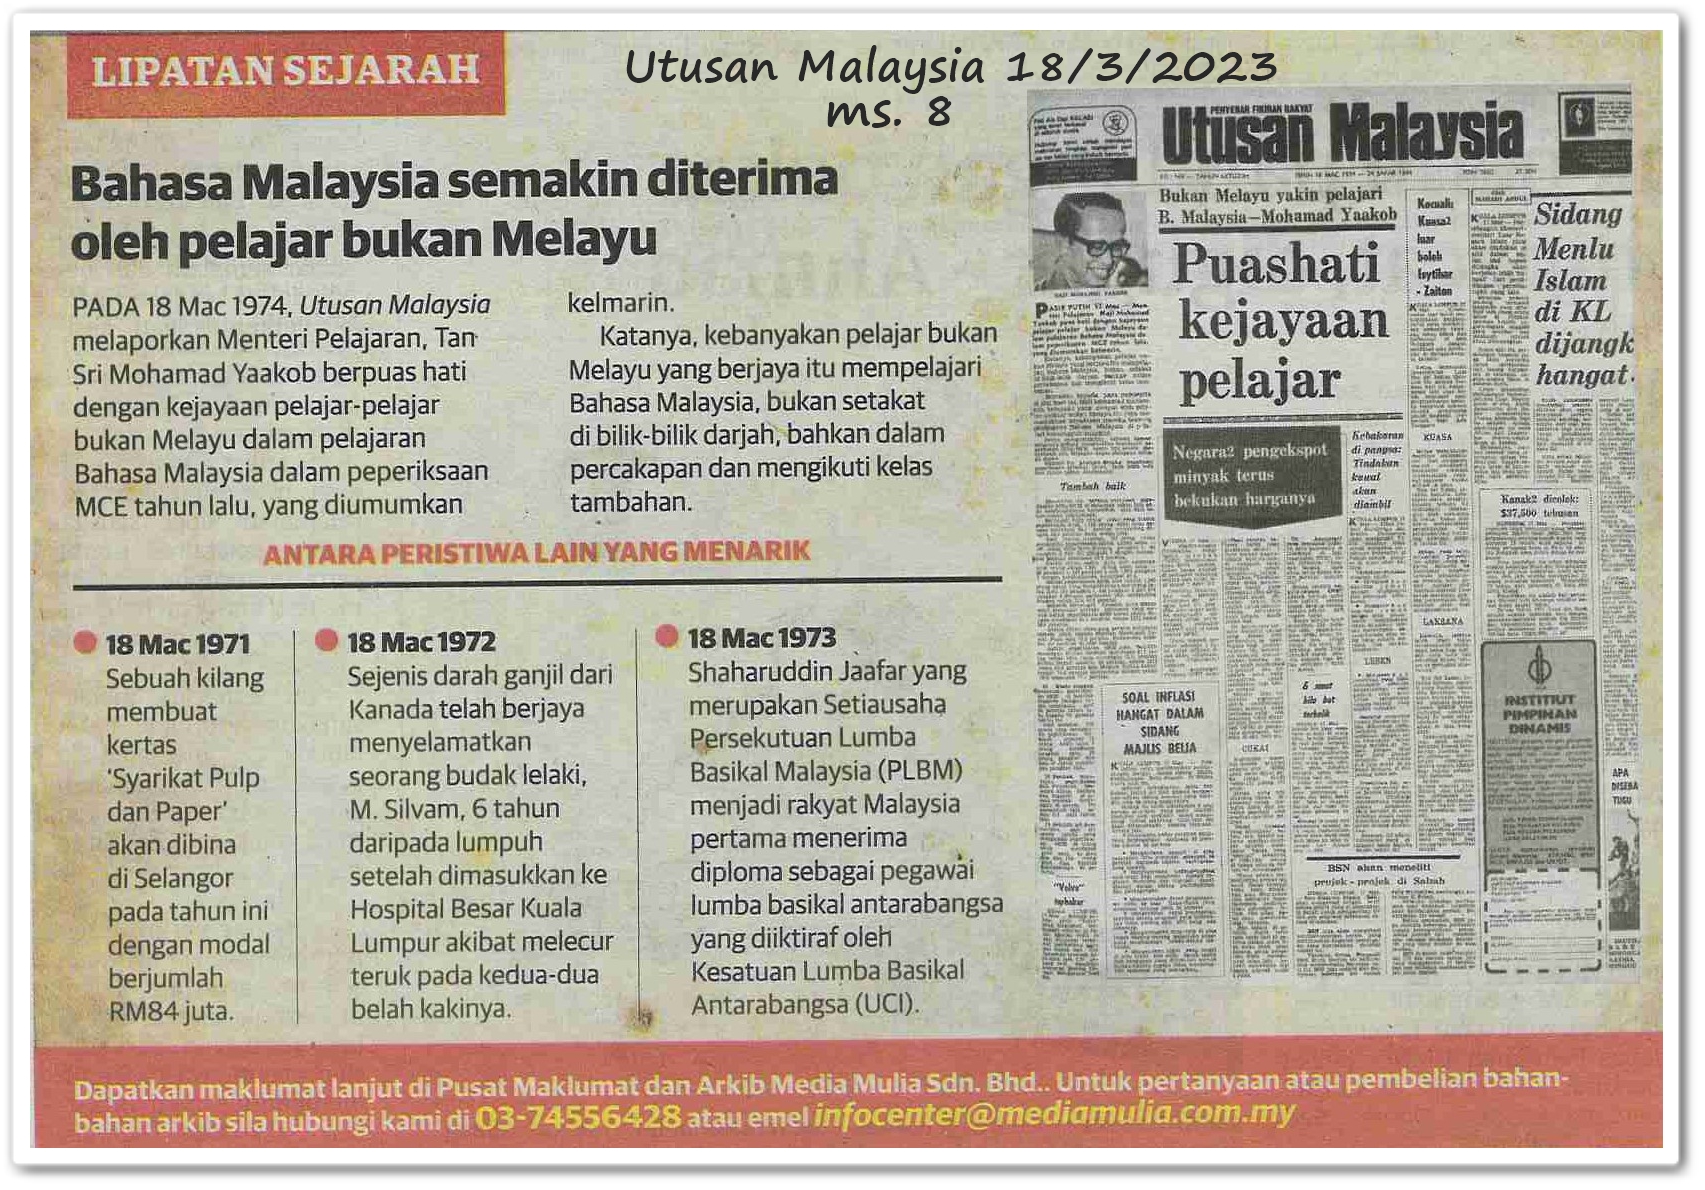 Lipatan sejarah 18 Mac - Keratan akhbar Utusan Malaysia 18 Mac 2023